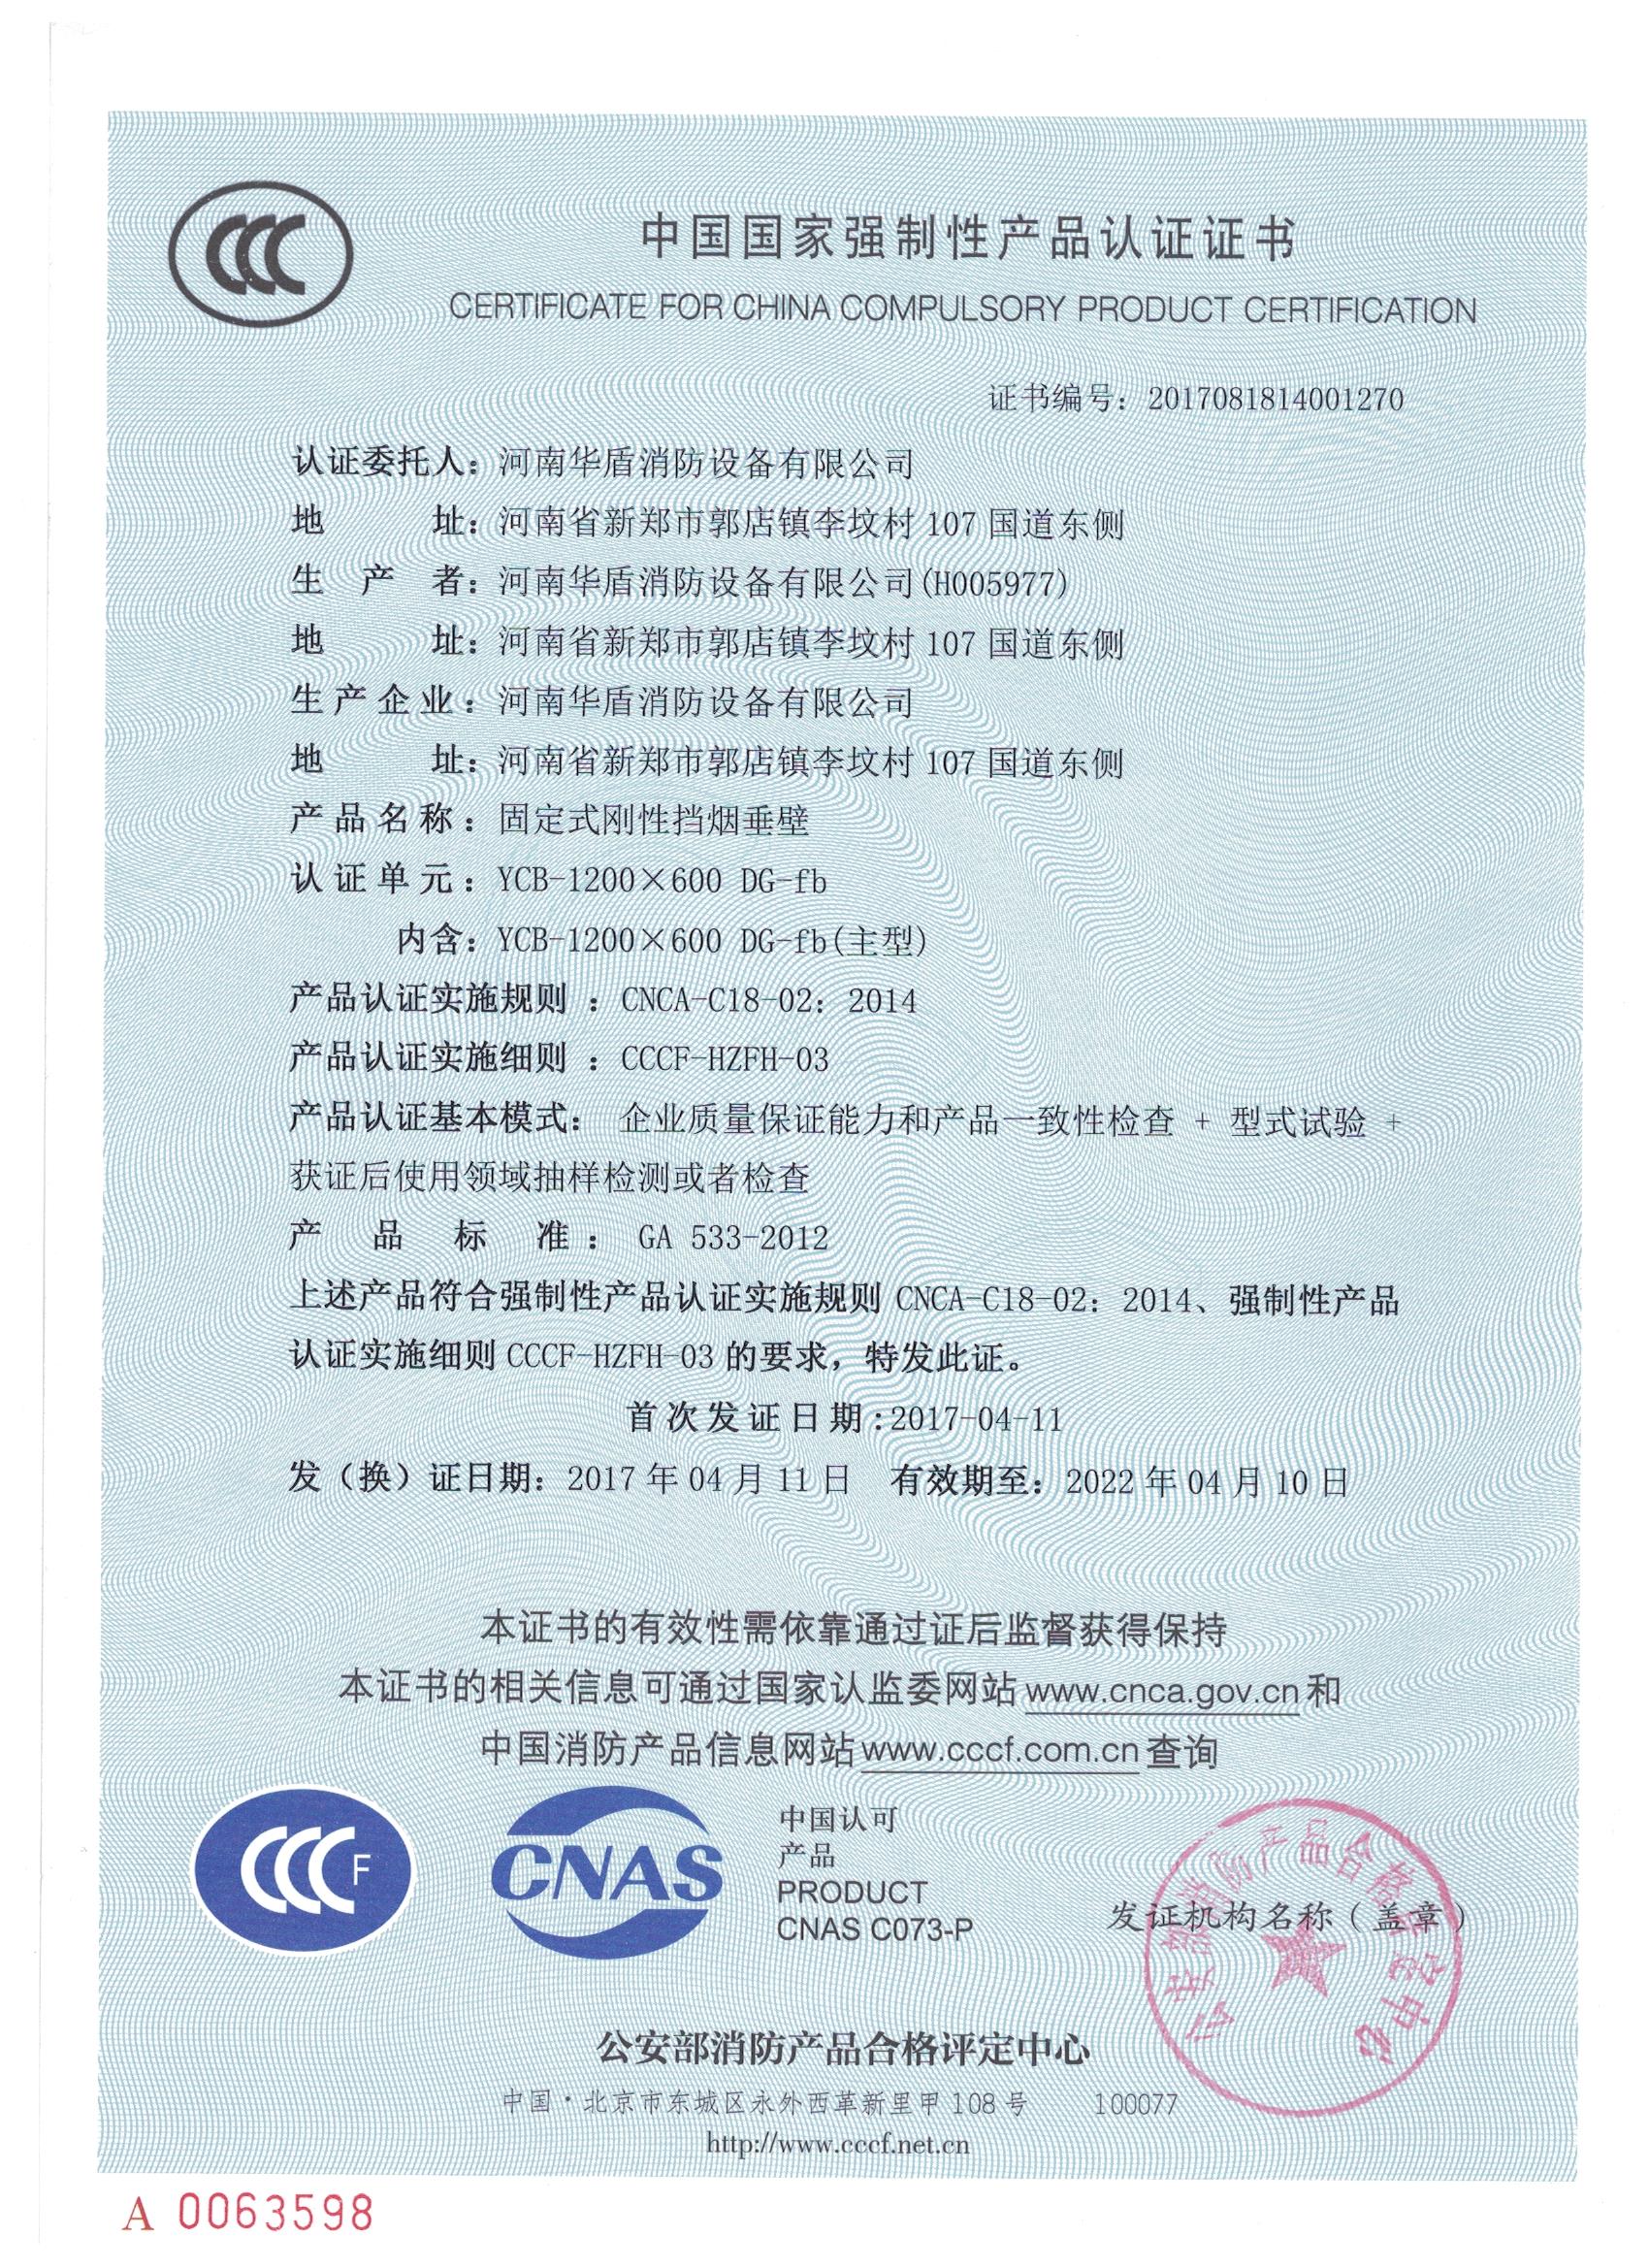 陕西YCB-1200X600 DG-fb-3C证书